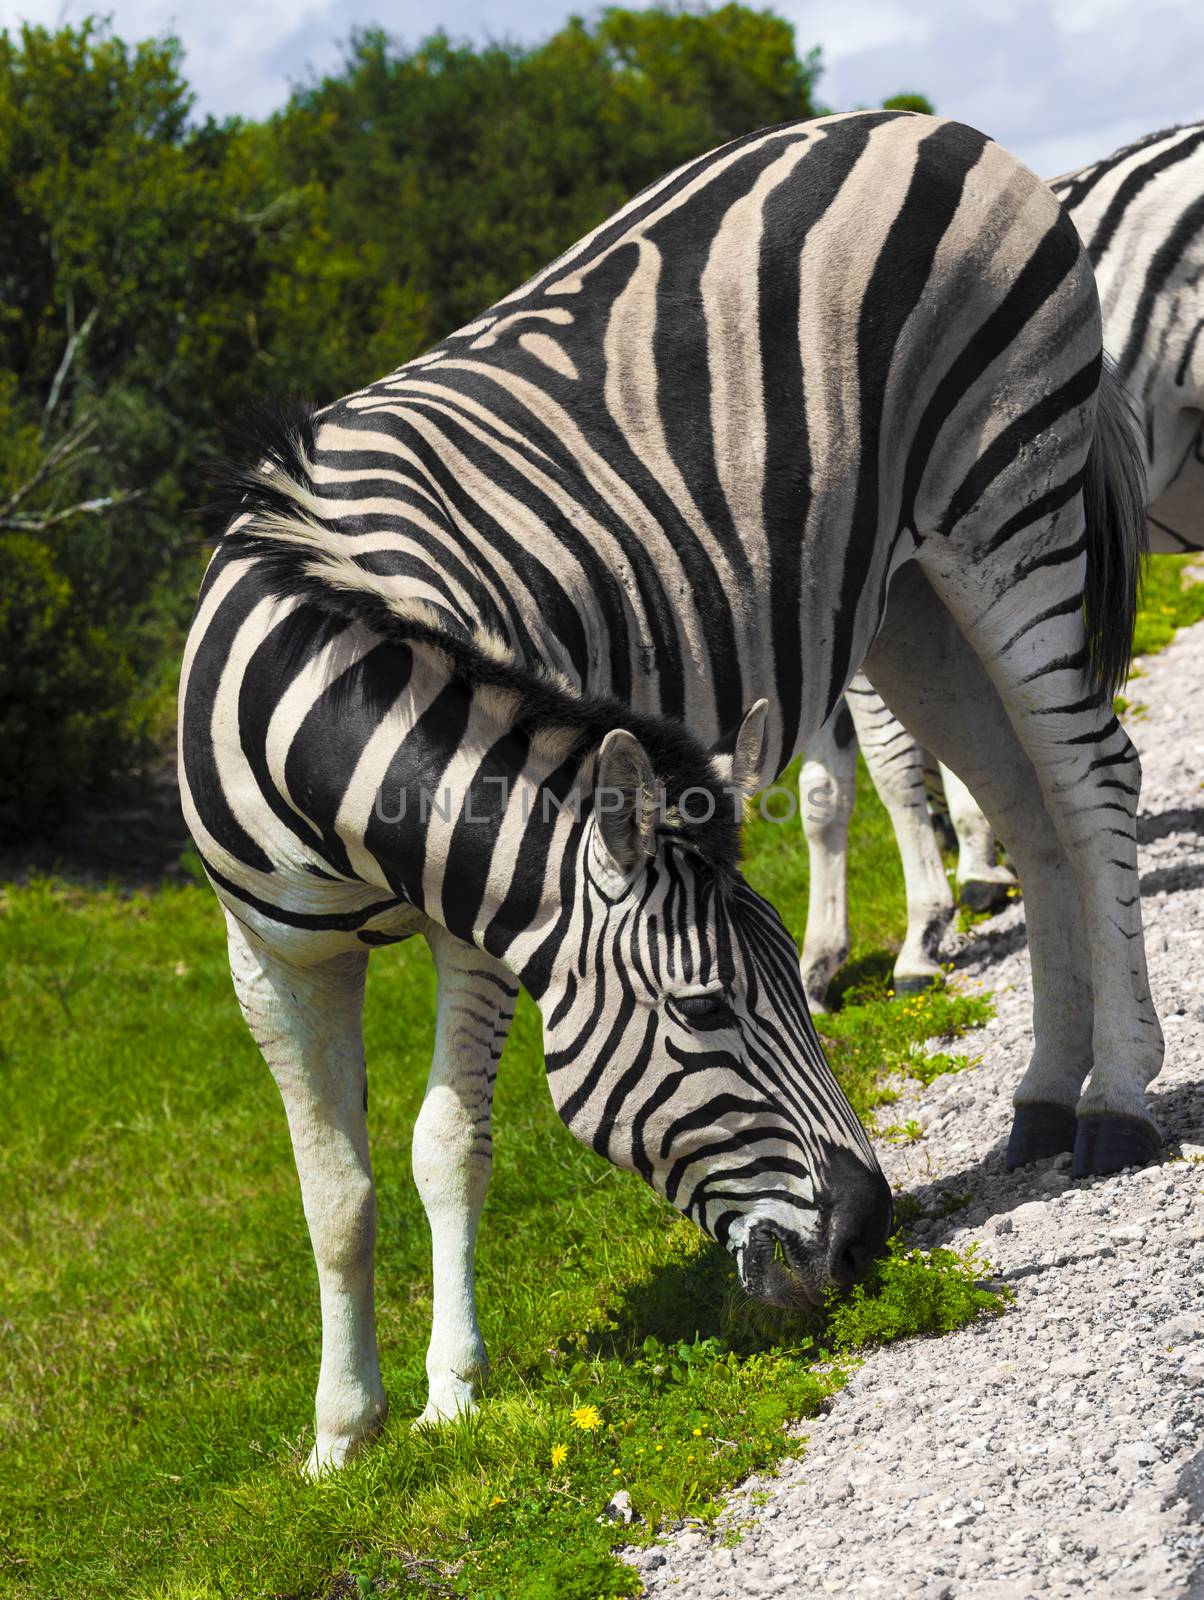 Zebras in a safari park in South Africa.